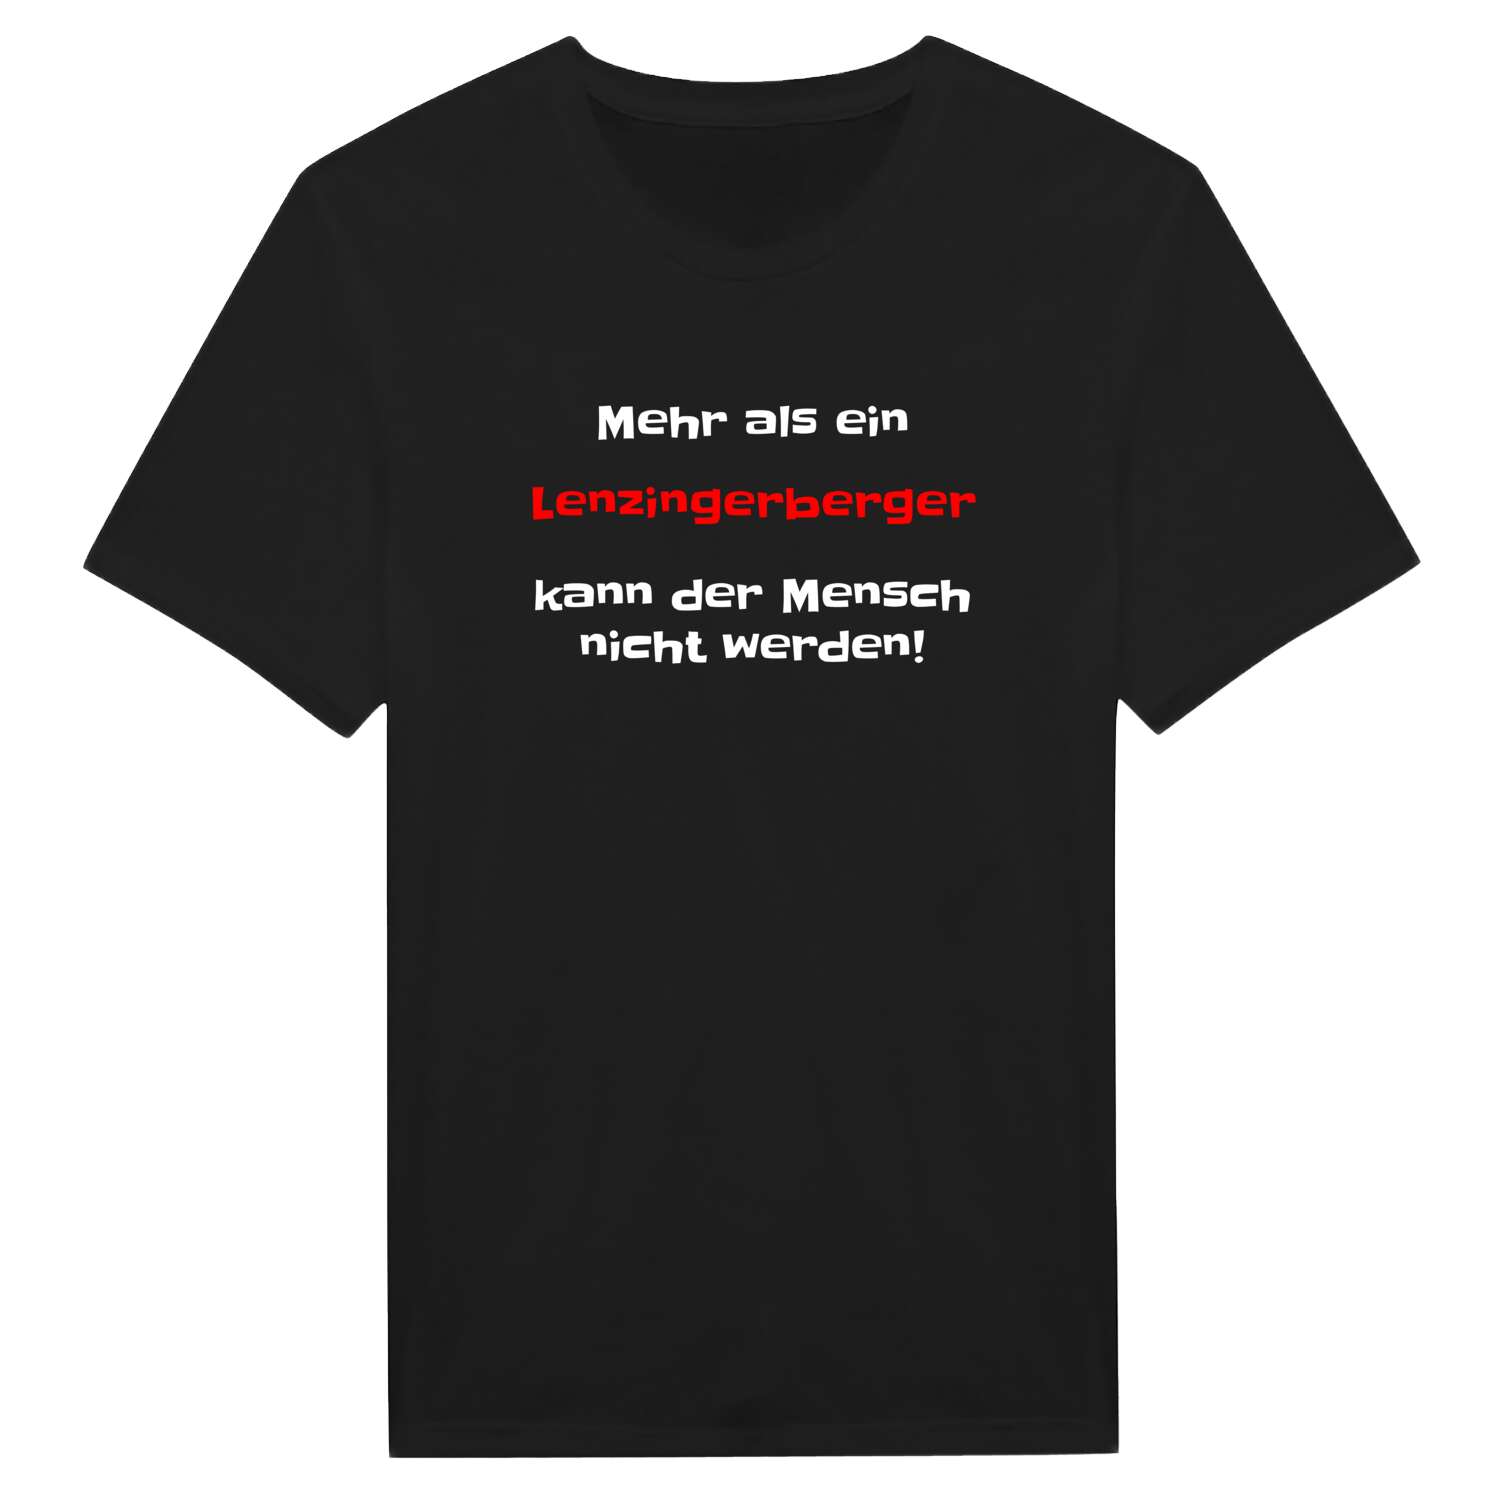 Lenzingerberg T-Shirt »Mehr als ein«